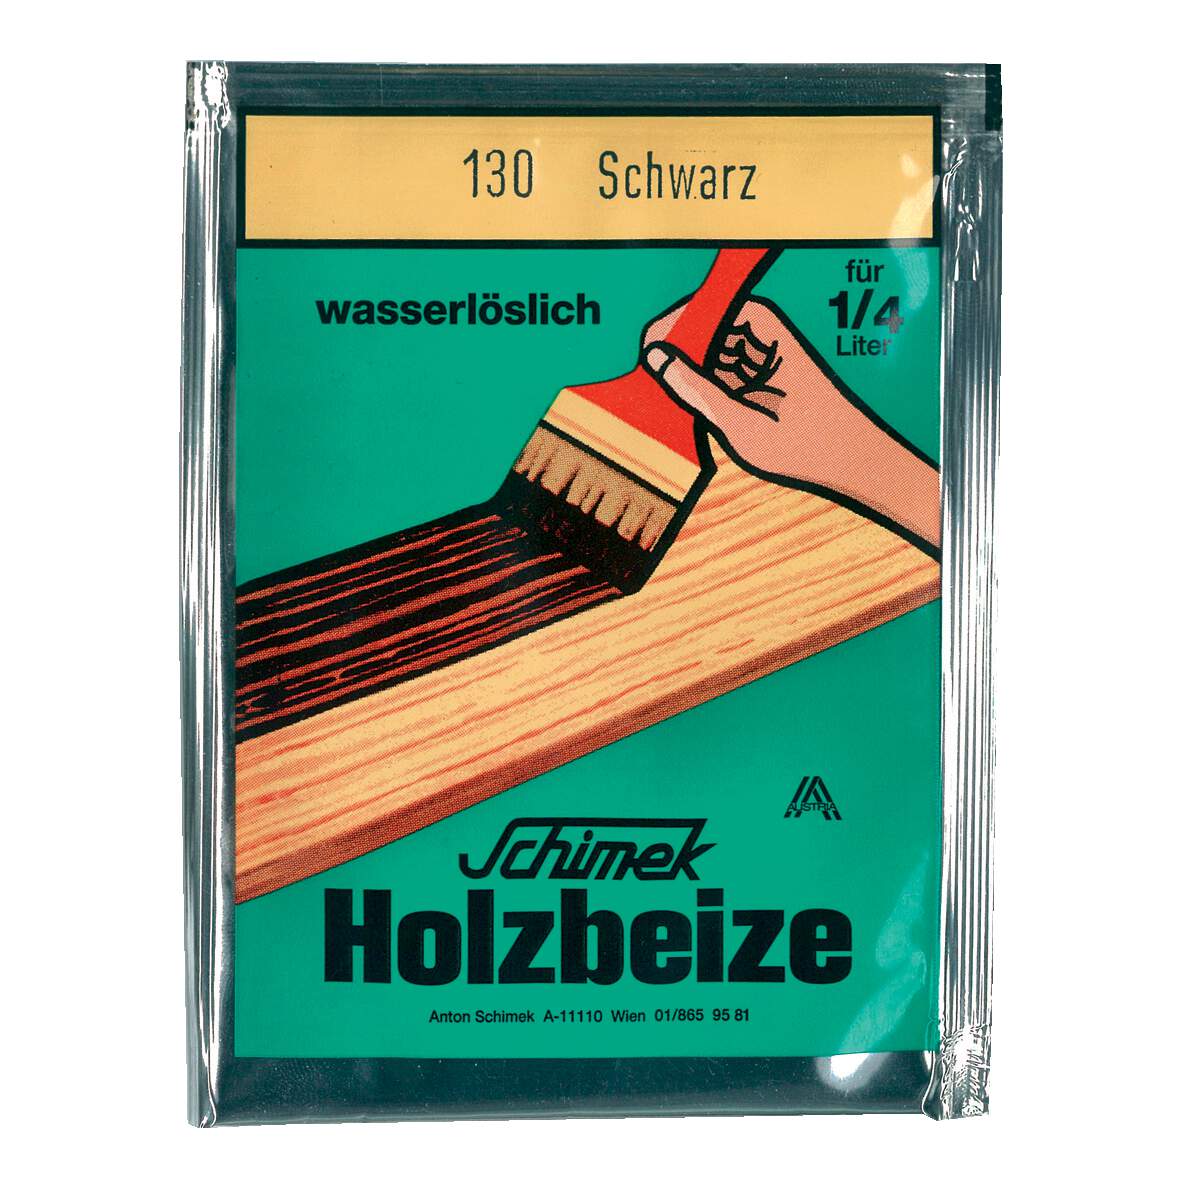 1216623 - Holzbeize wasserlöslich